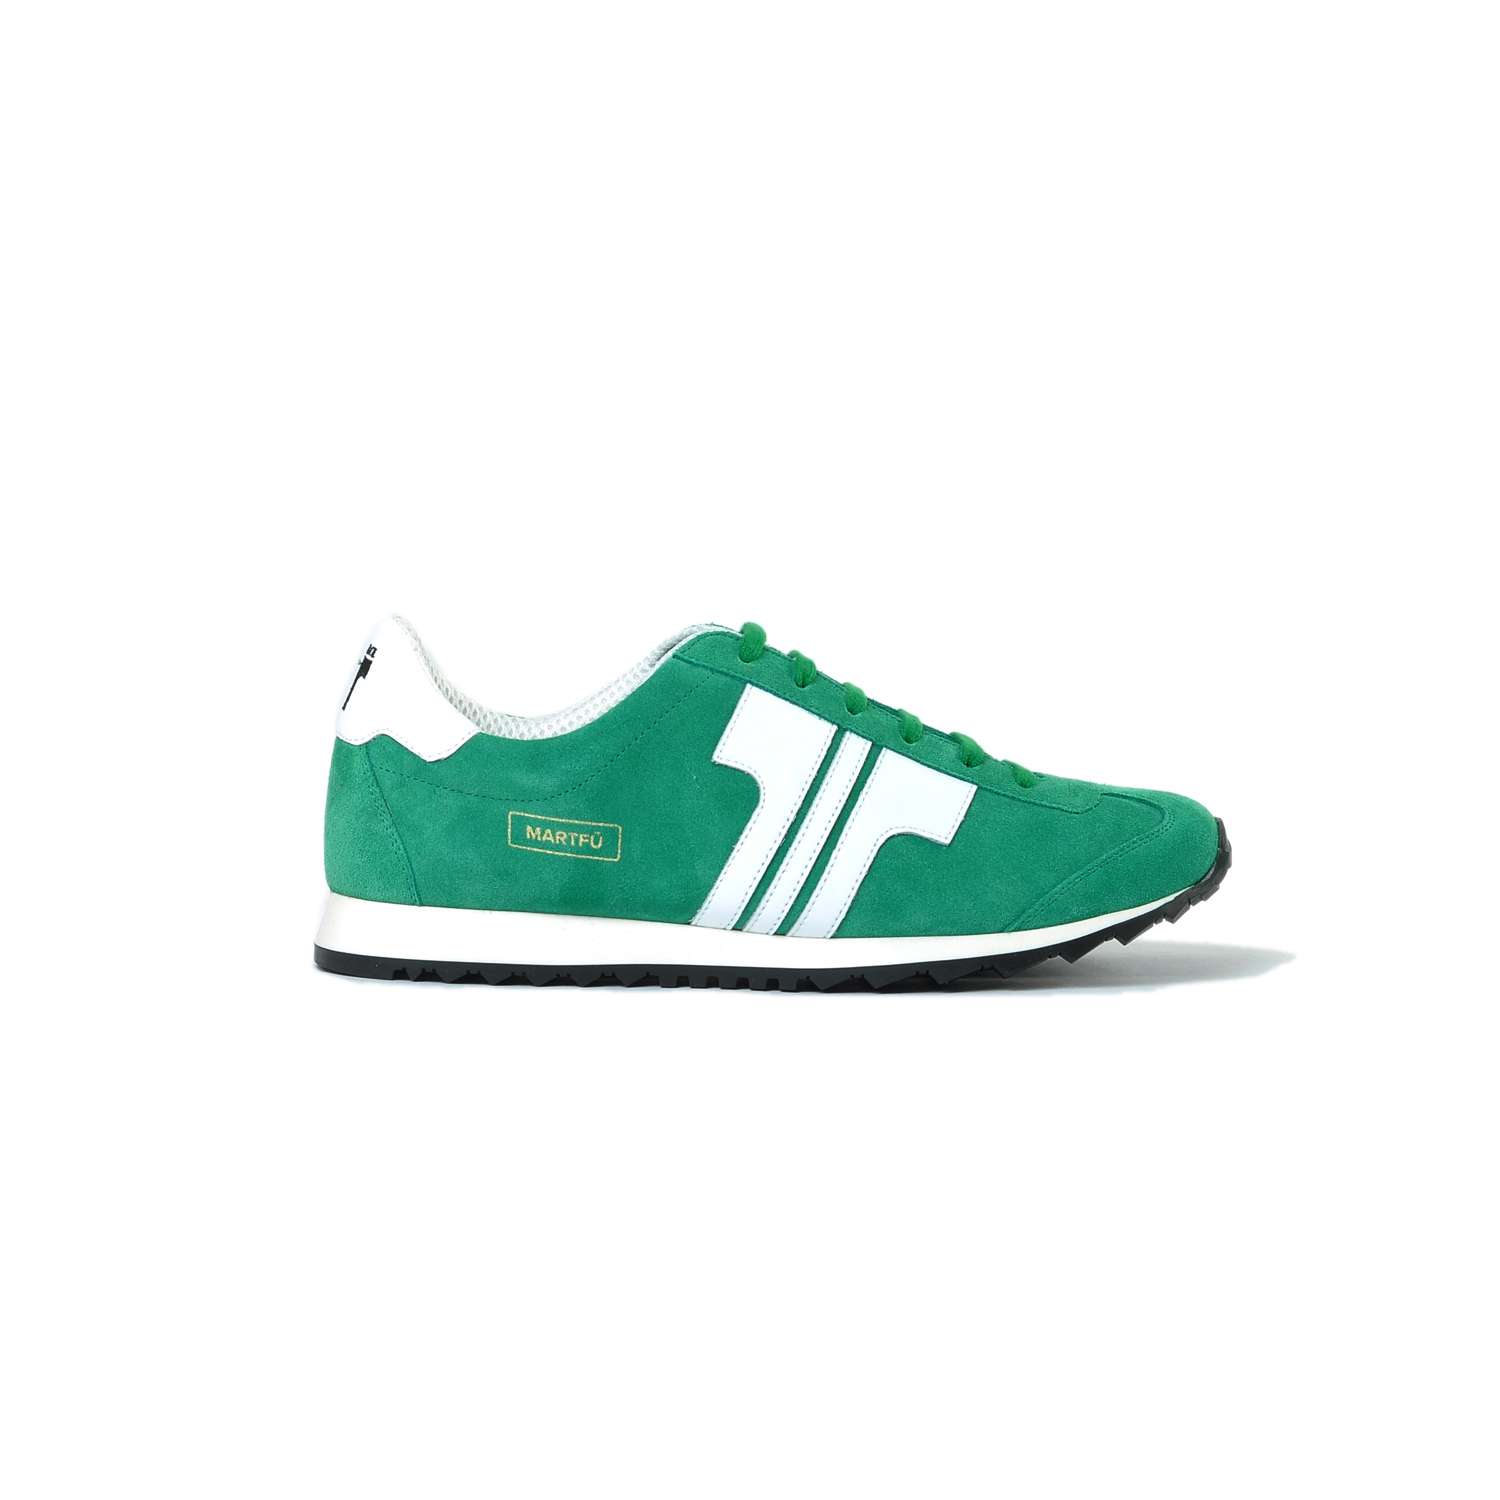 Tisza shoes - Martfű - Green-white